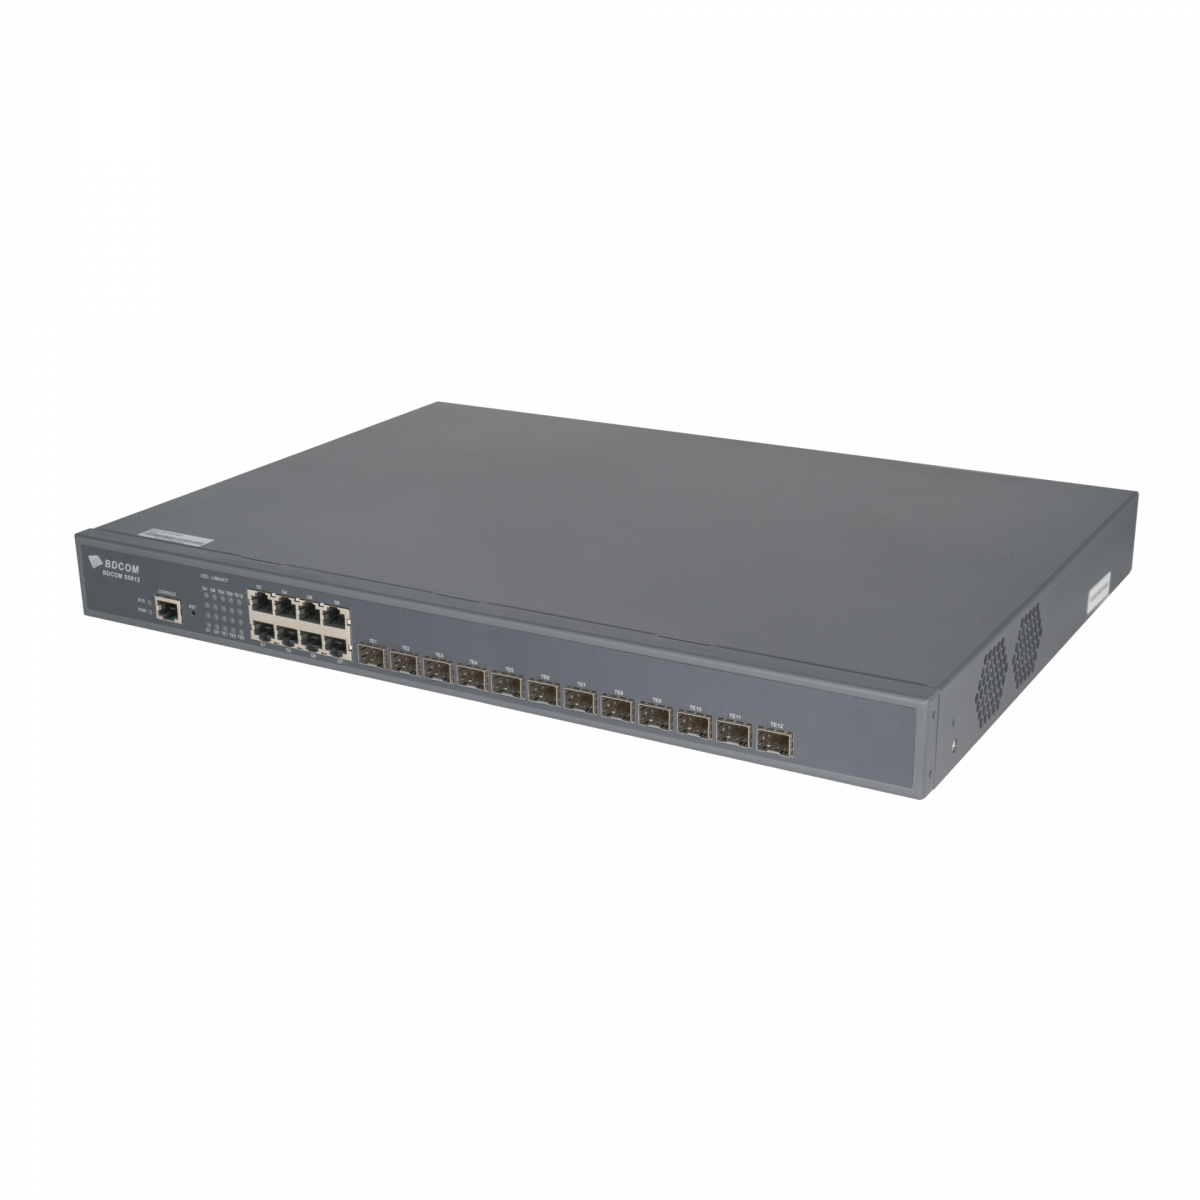 Управляемый коммутатор уровня 3 BDCOM S5612-2AC, 8x 10/100/1000Base-T, 12x 1/10GE SFP+, 2x 220VAC (встроенные БП)